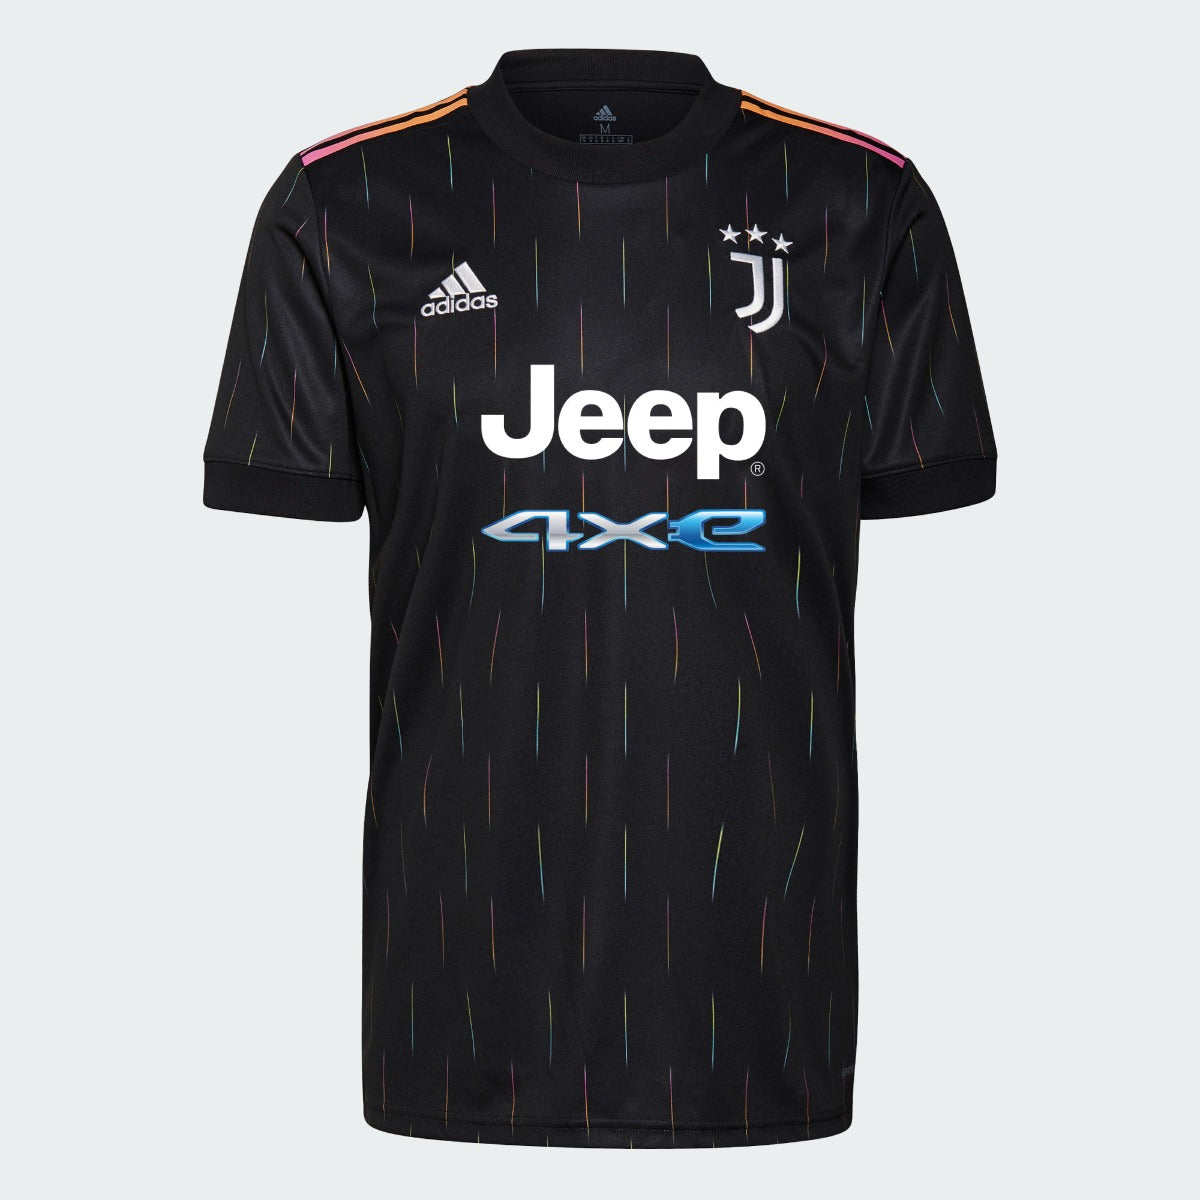 Adidas 2021-22 Juventus Away Jersey - Black (Front)